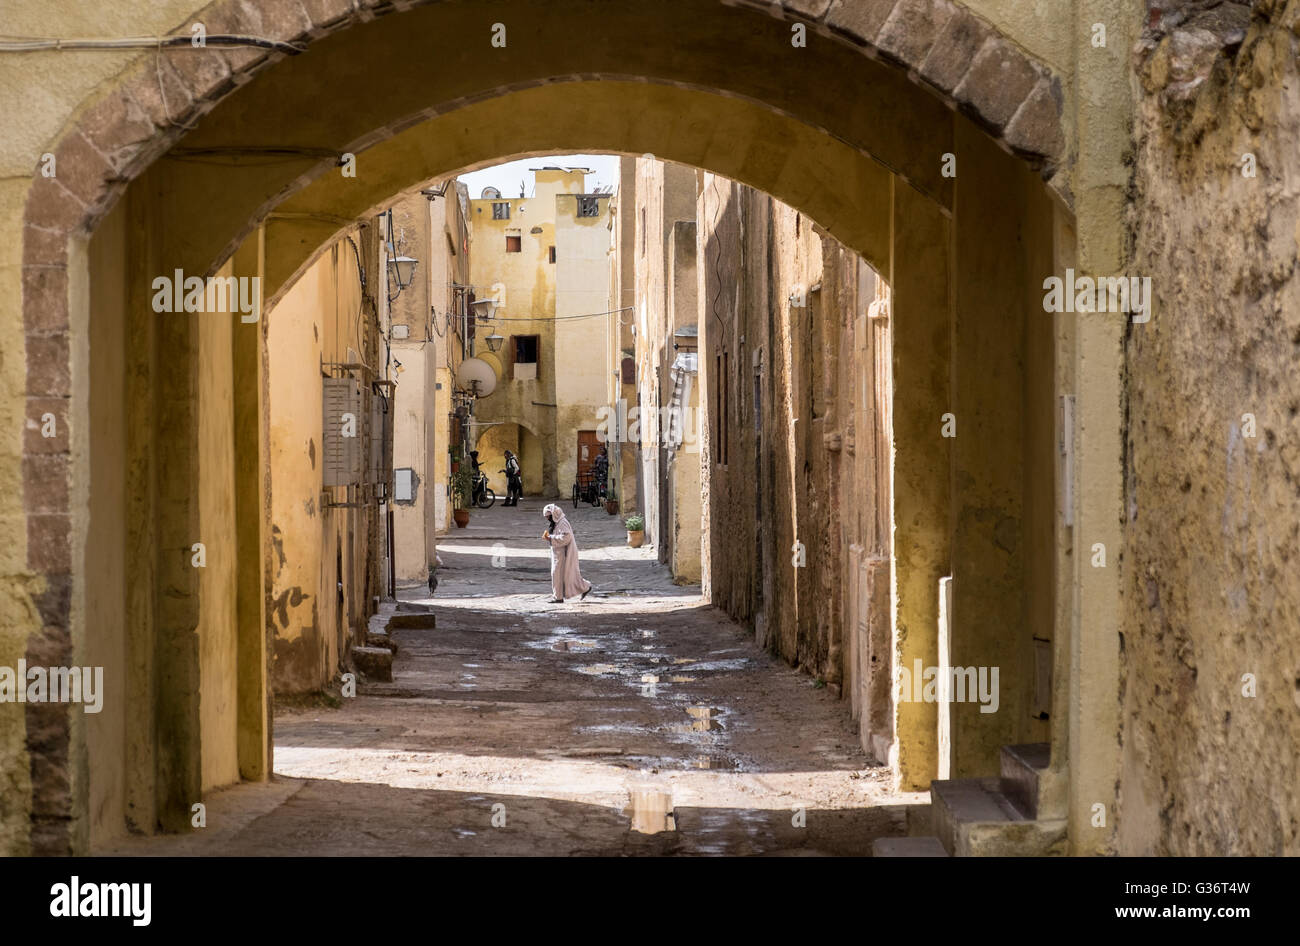 In der Medina (Altstadt) von El Jadida, einem ehemaligen portugiesischen Festungsstadt an Marokkos Atlantikküste Stockfoto